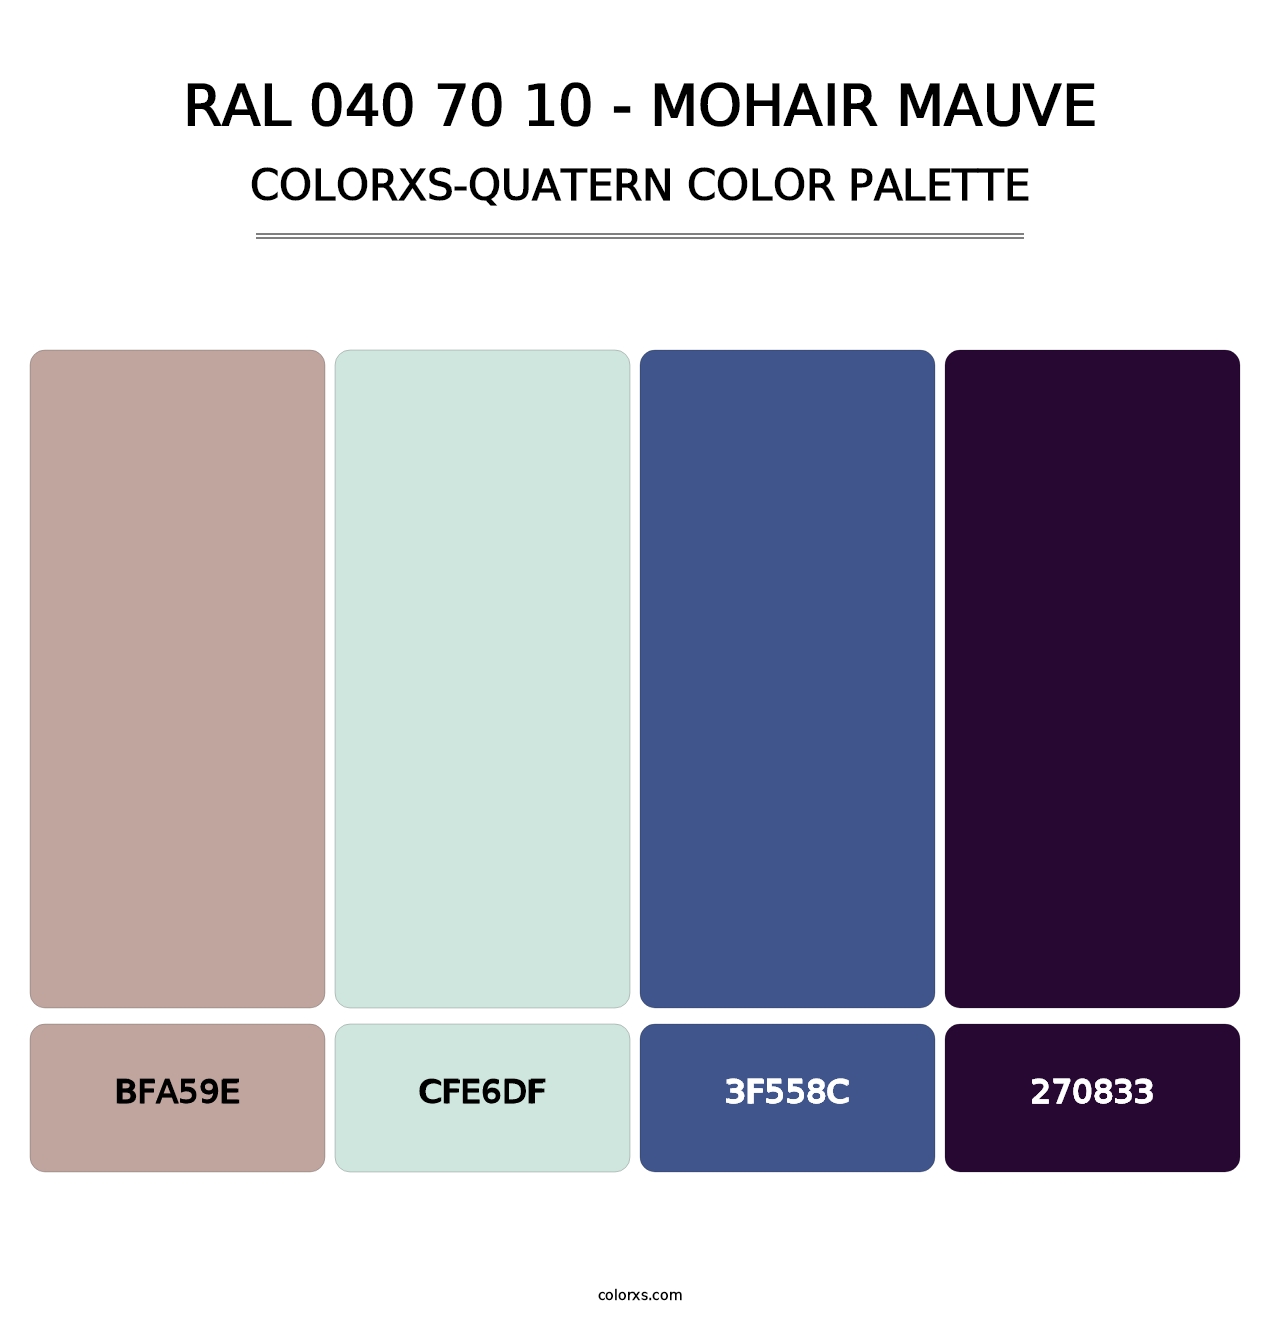 RAL 040 70 10 - Mohair Mauve - Colorxs Quatern Palette